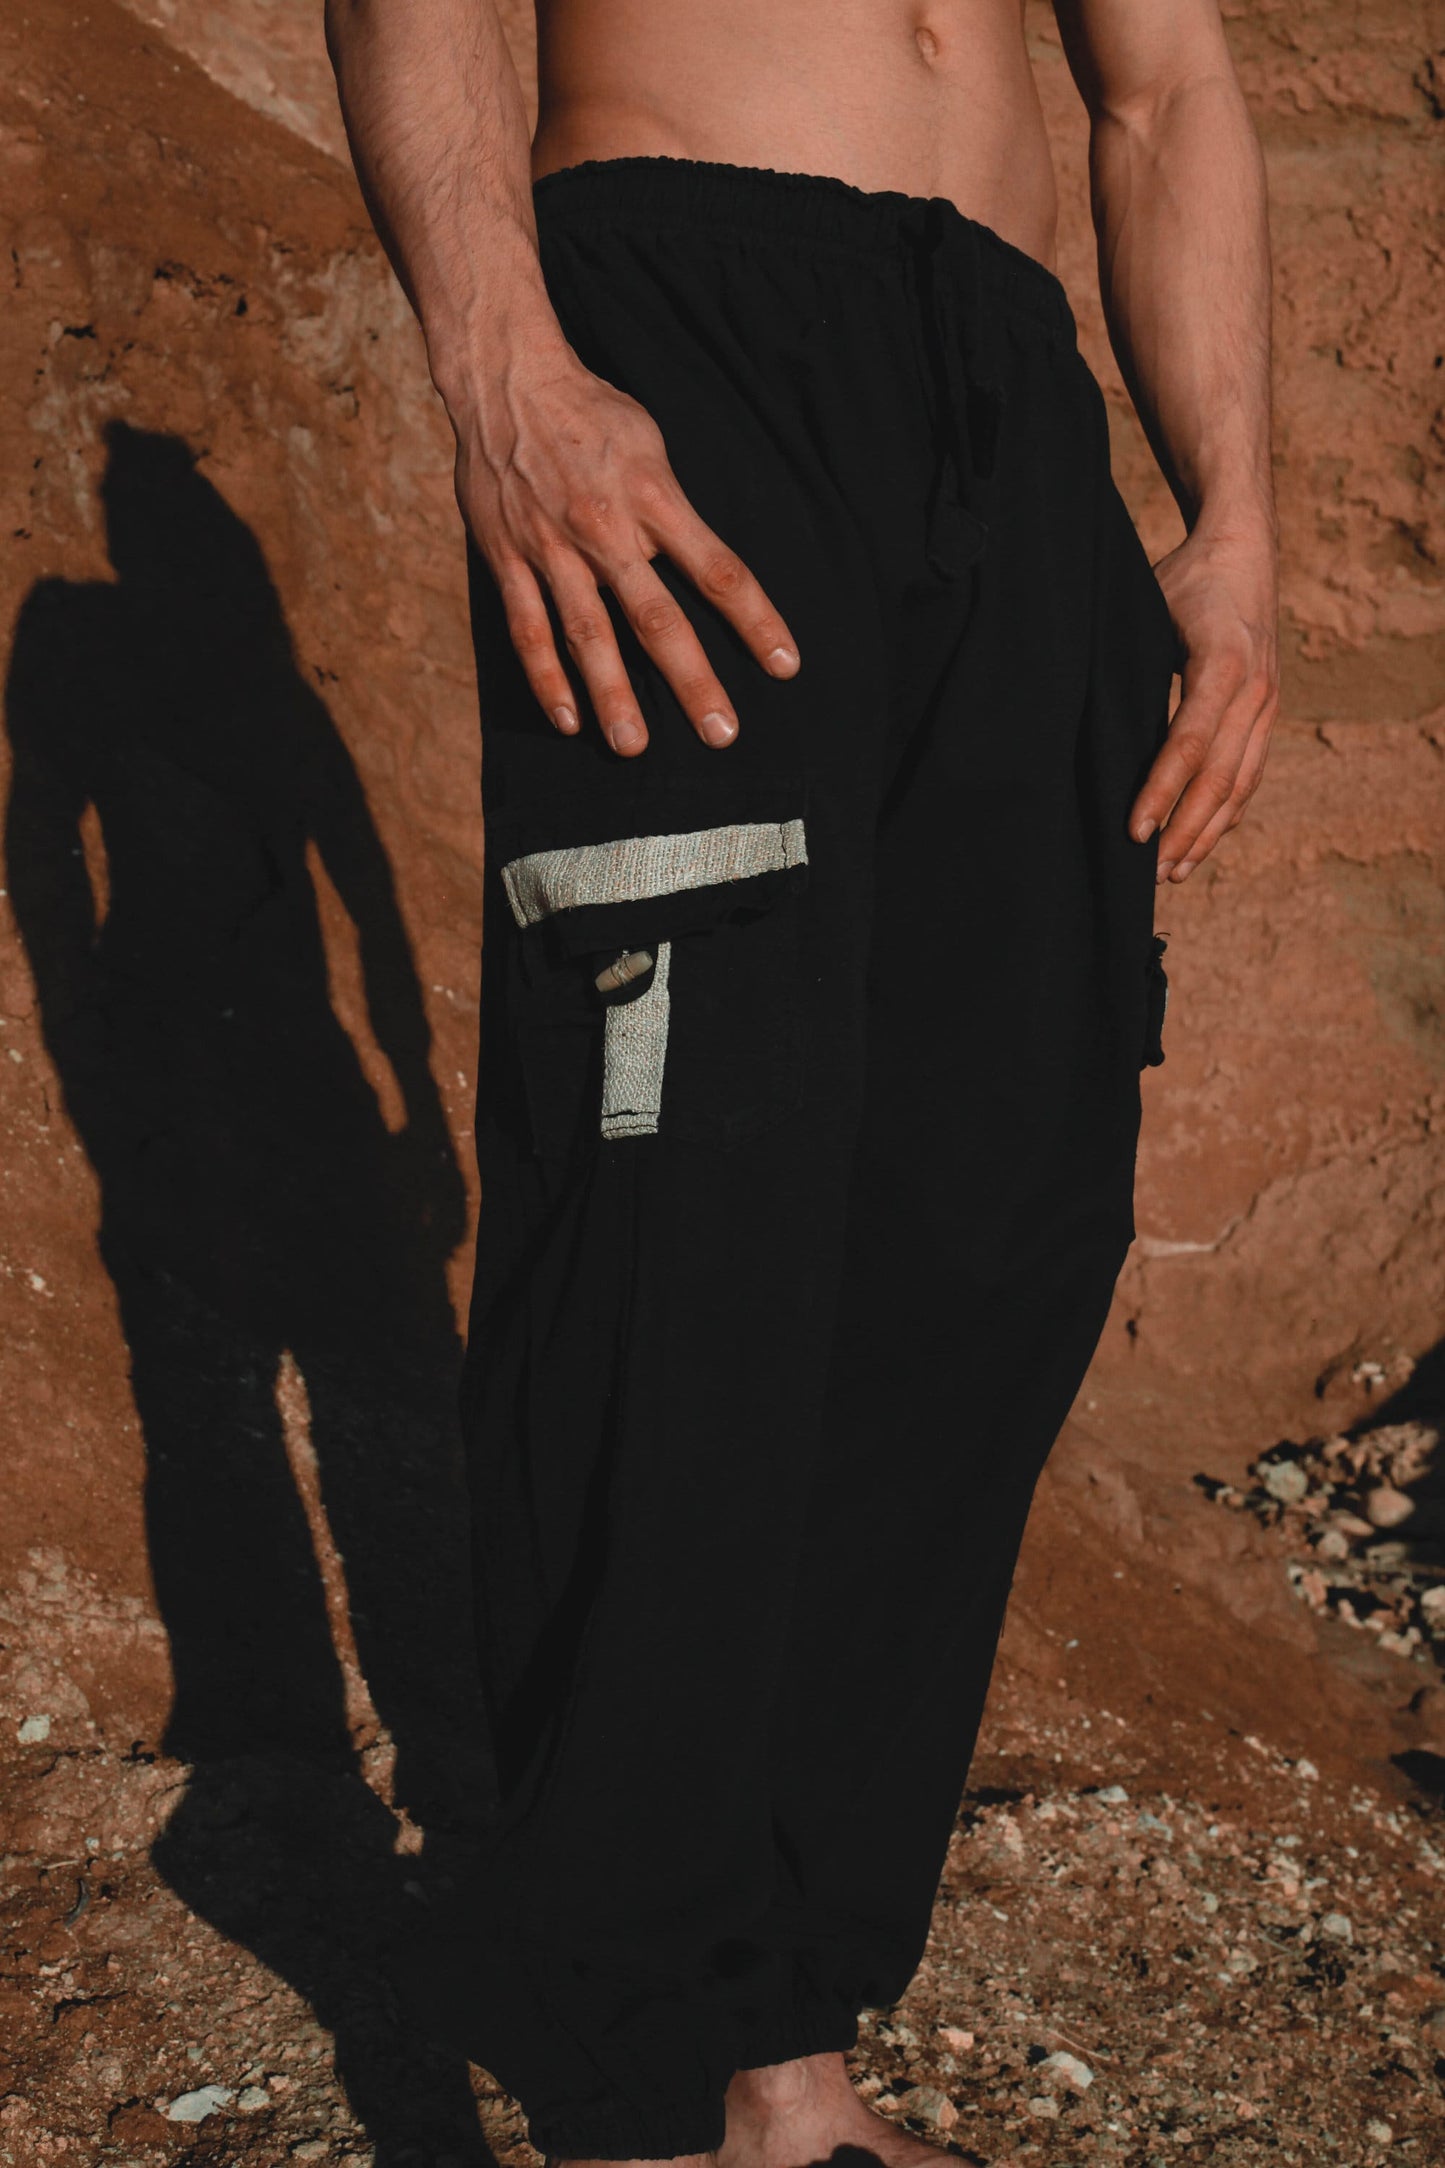 OKKO Faded Black Organic Hemp and Cotton Mens Pants Handmade Four Pockets Eco friendly Sustainable Comfortable Earthy Yoga Gypsy Boho AJJAYA